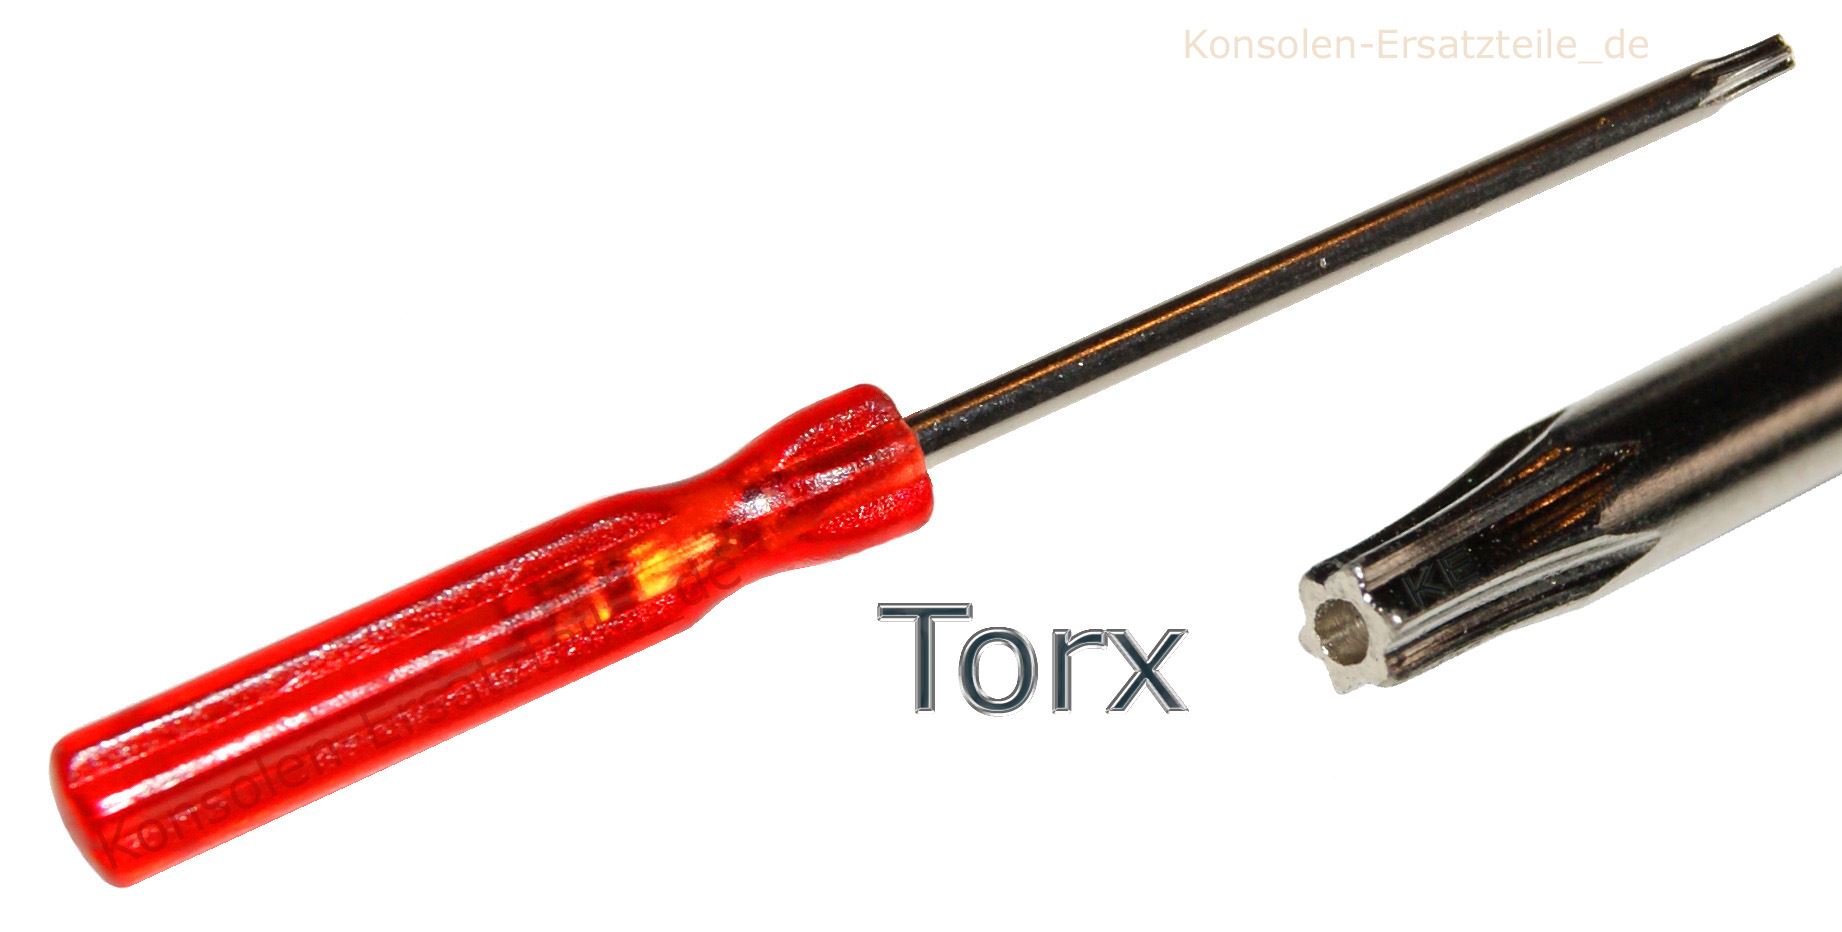 Schraubendreher Torx T8 für PS 4 Xbox 360 GEHÄUSE ÖFFNEN SPEZIAL WERKZEUG  +LOCH